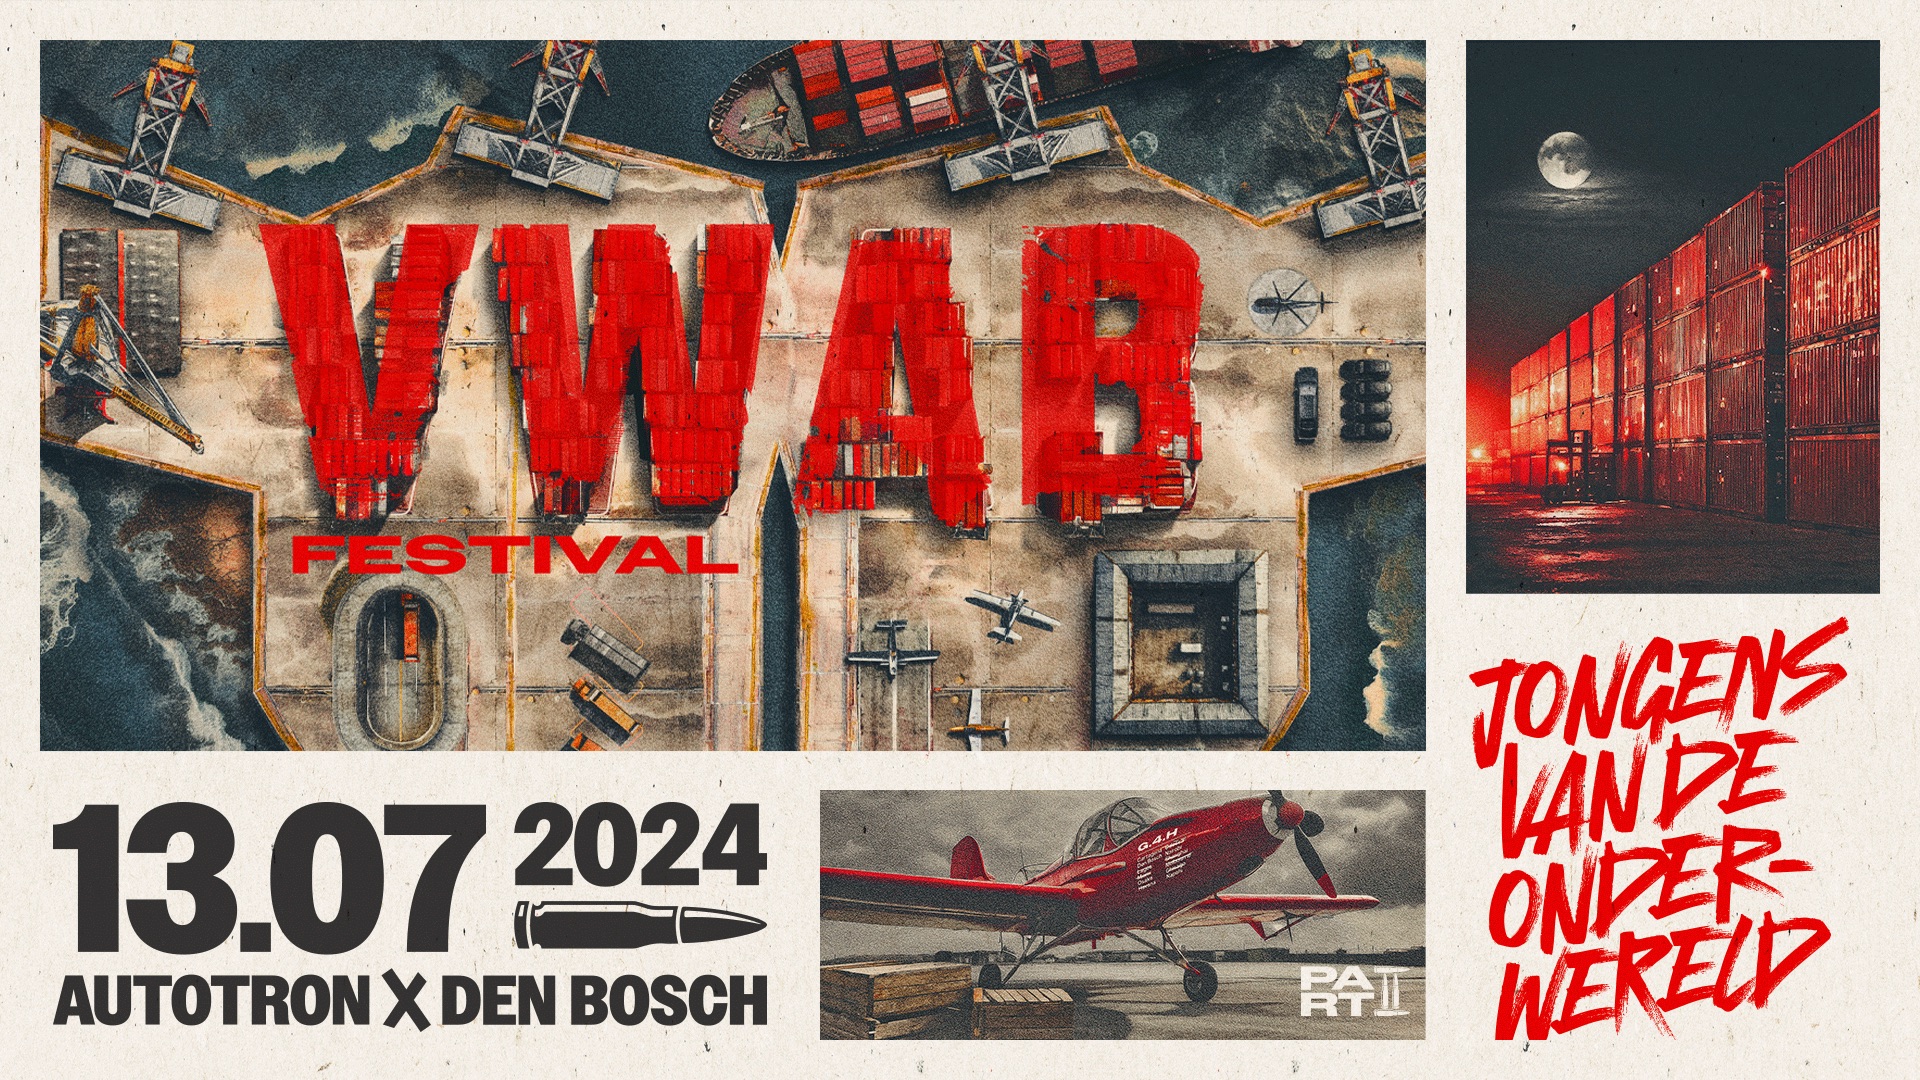 Vwab festival 2024